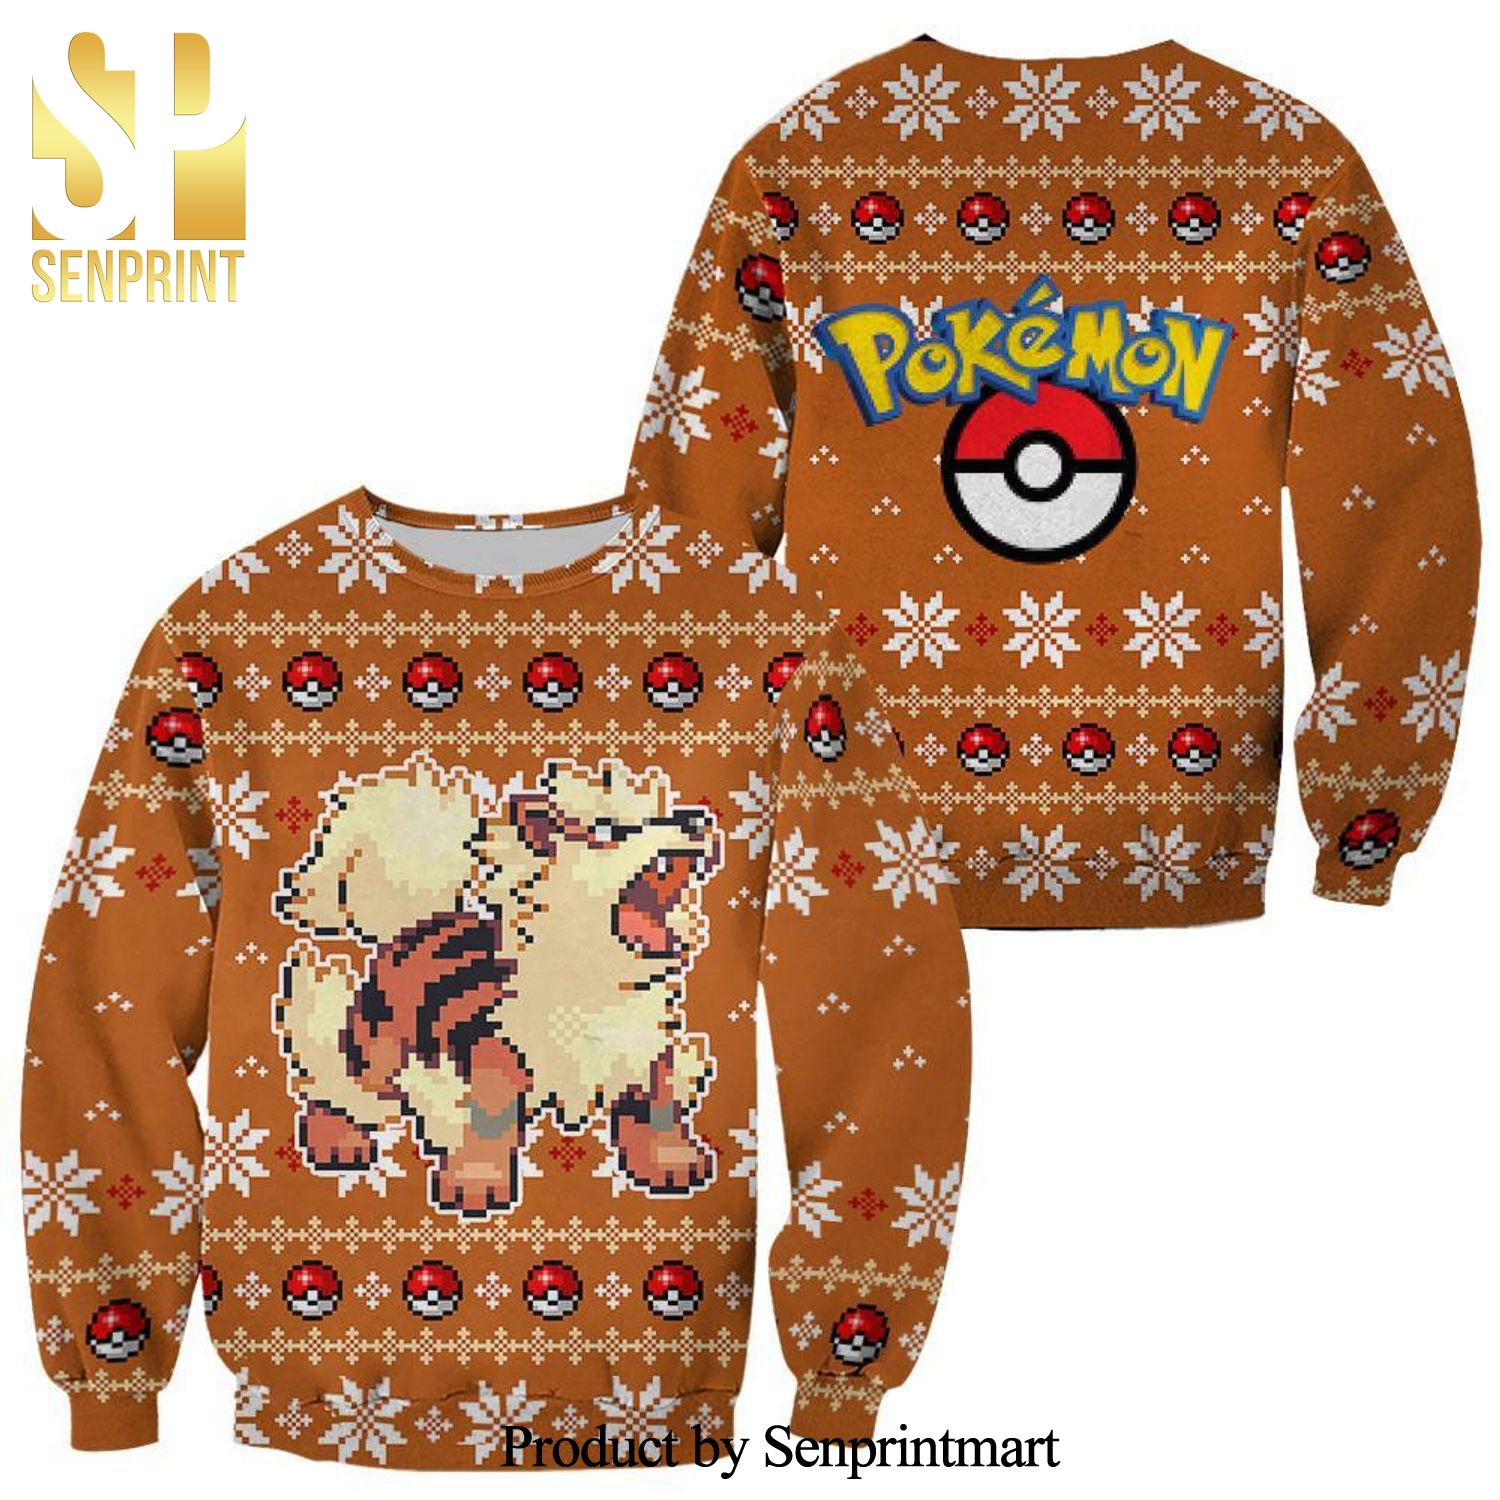 Arcanine Pokemon Anime Manga Knitted Ugly Christmas Sweater